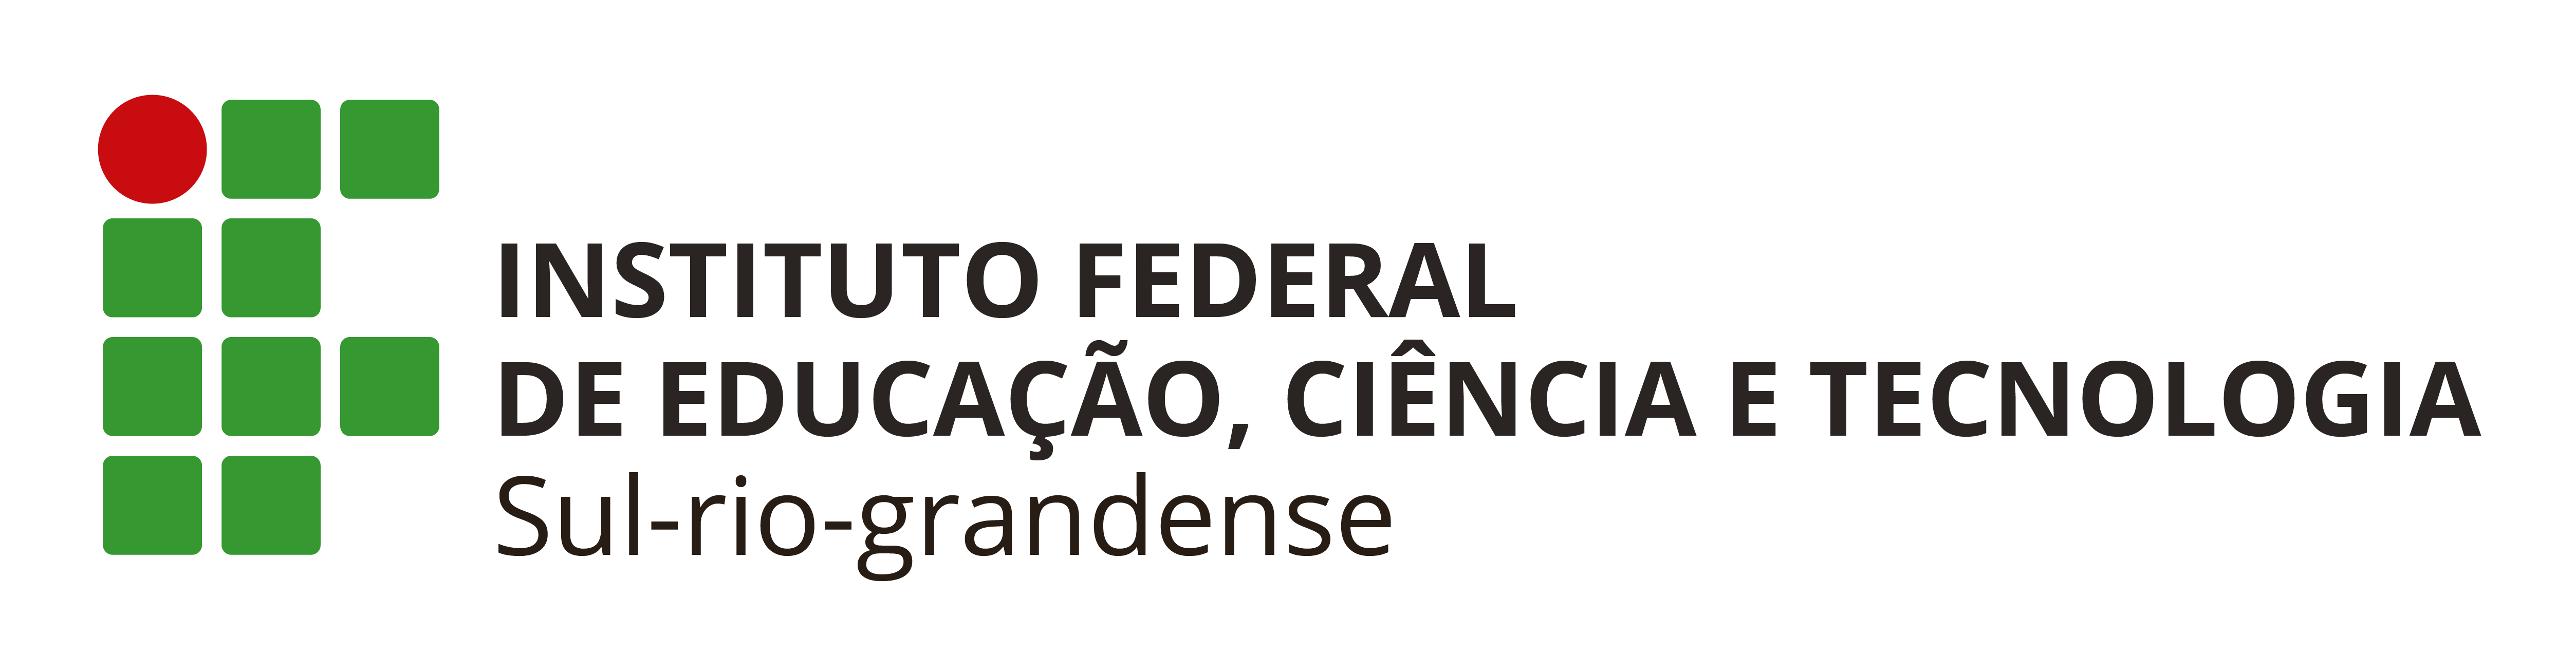 Instituto Federal de Educação, Ciência e Tecnologia, Sul-rio-grandense - Brazil